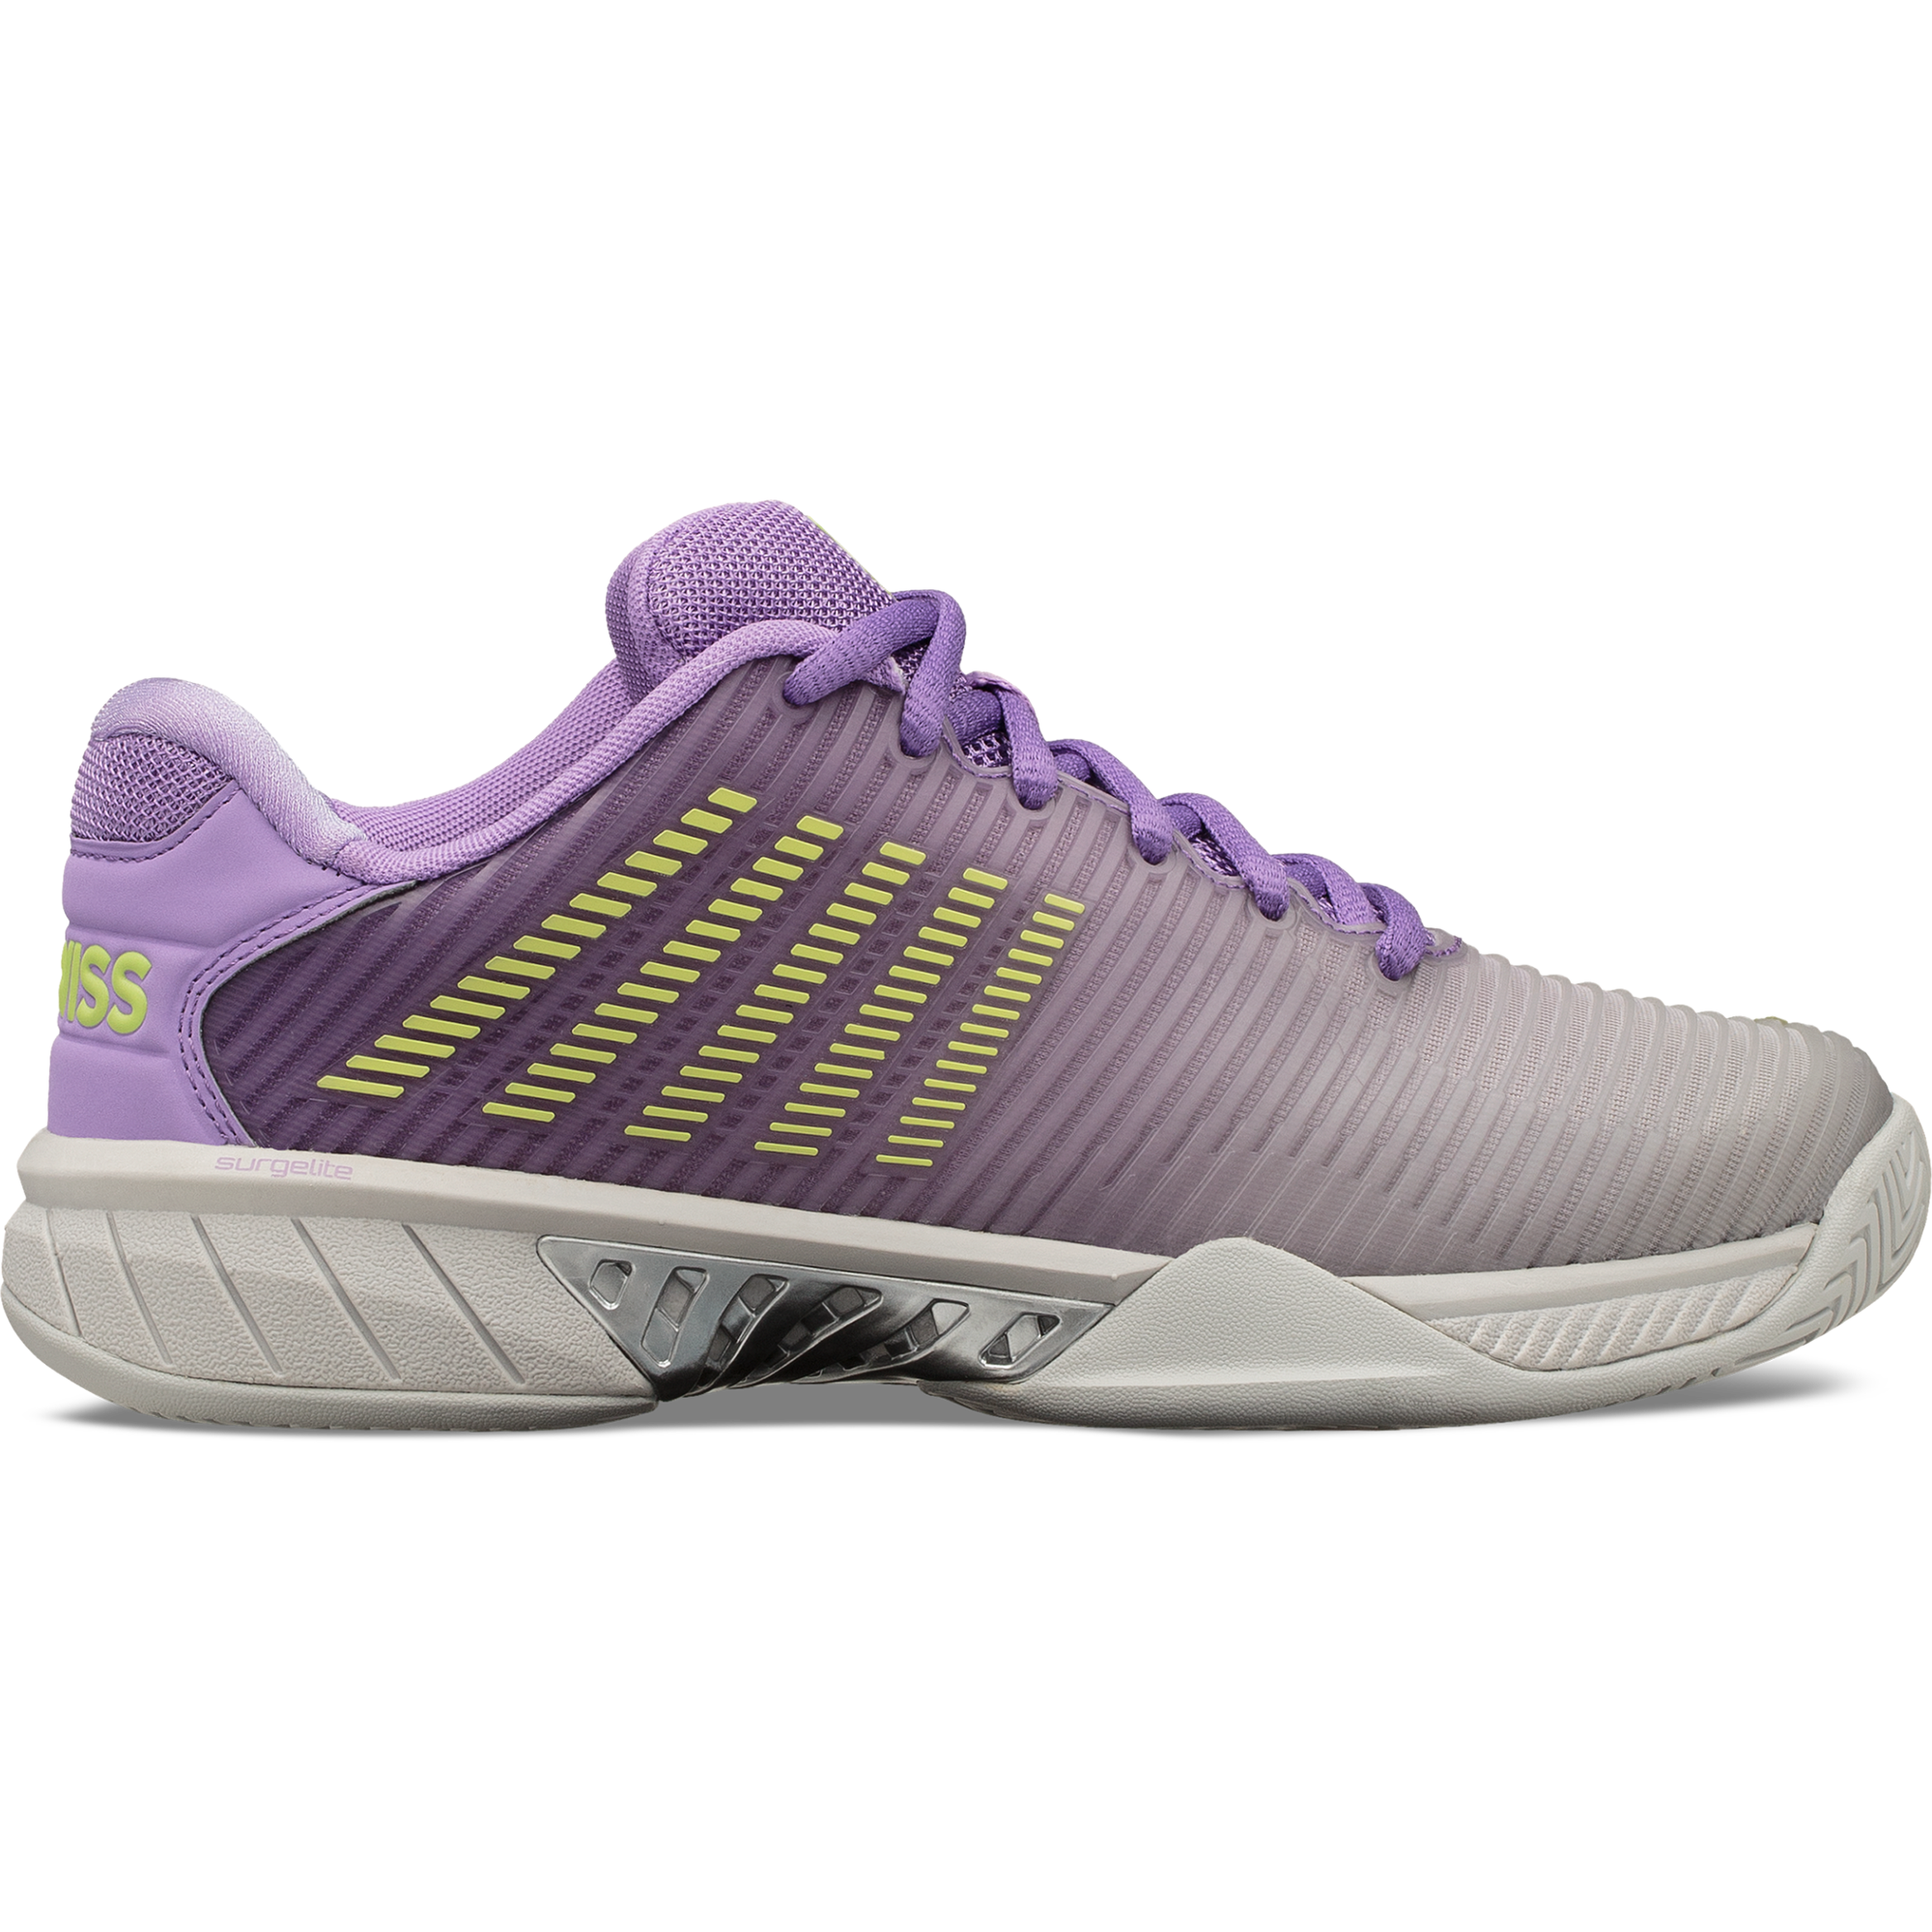 tennis shoes purple